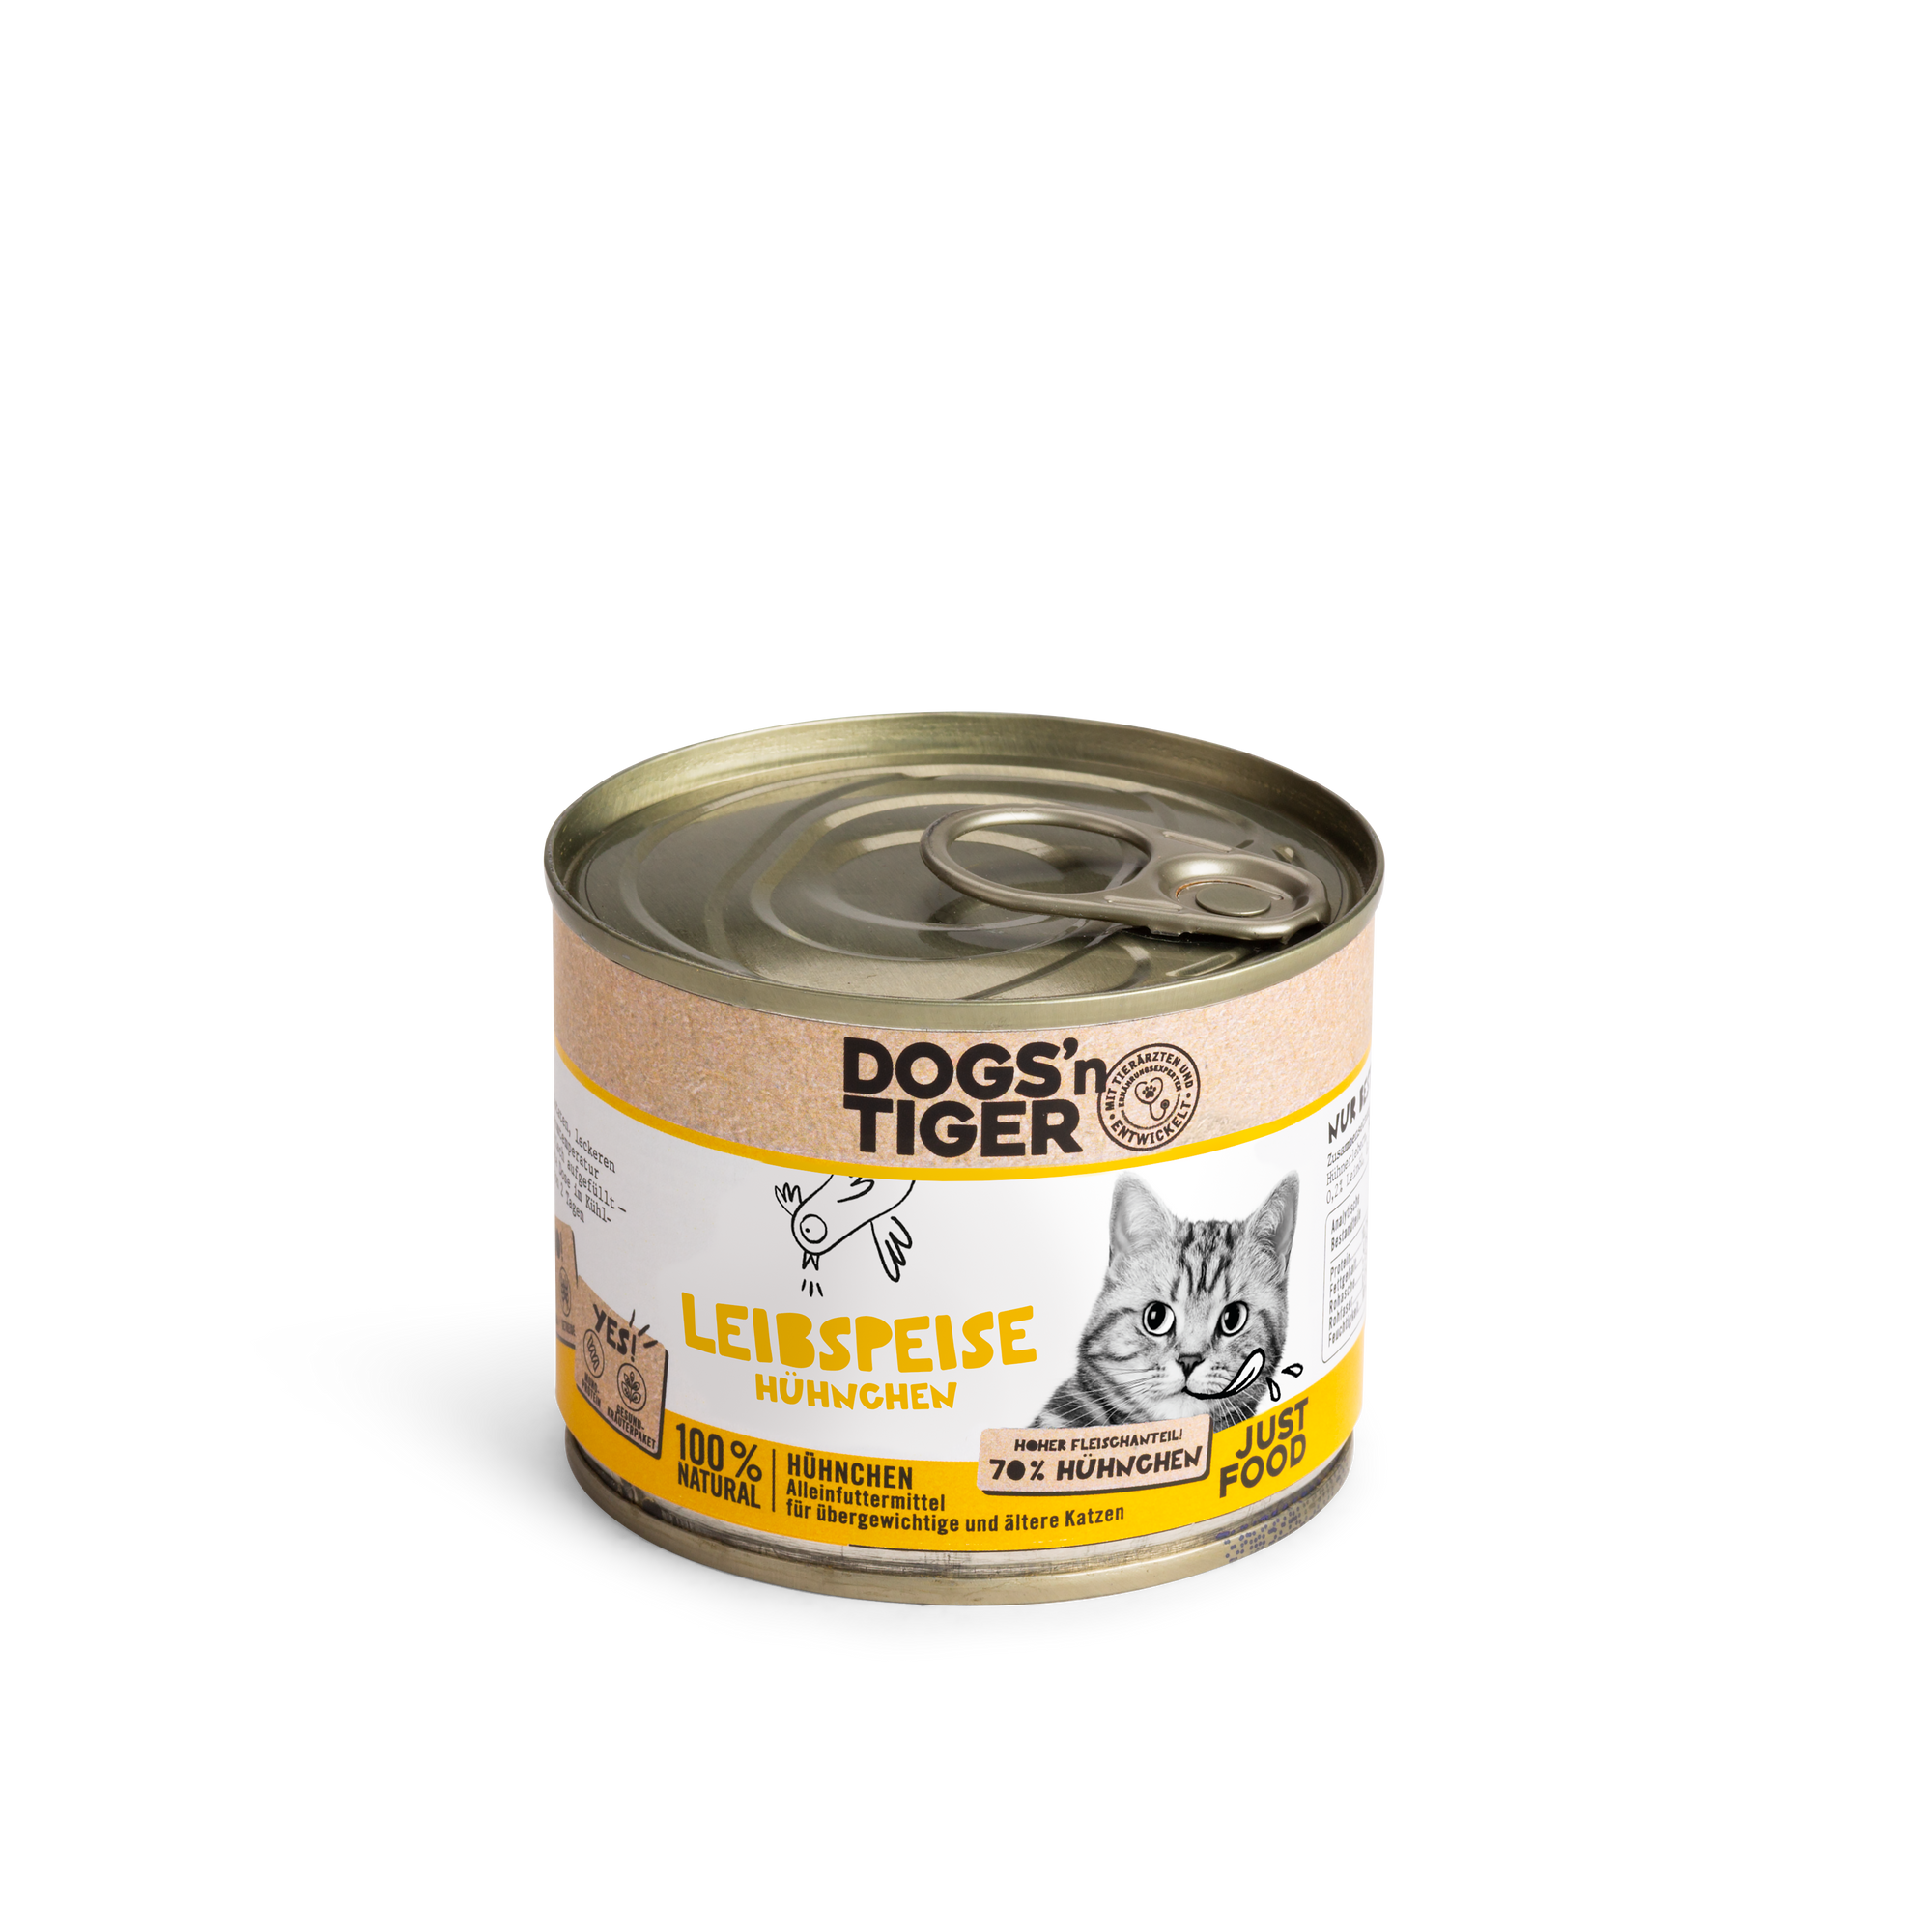 Artikel mit dem Namen Dogs'n Tiger Katze Leibspeise im Shop von zoo.de , dem Onlineshop für nachhaltiges Hundefutter und Katzenfutter.